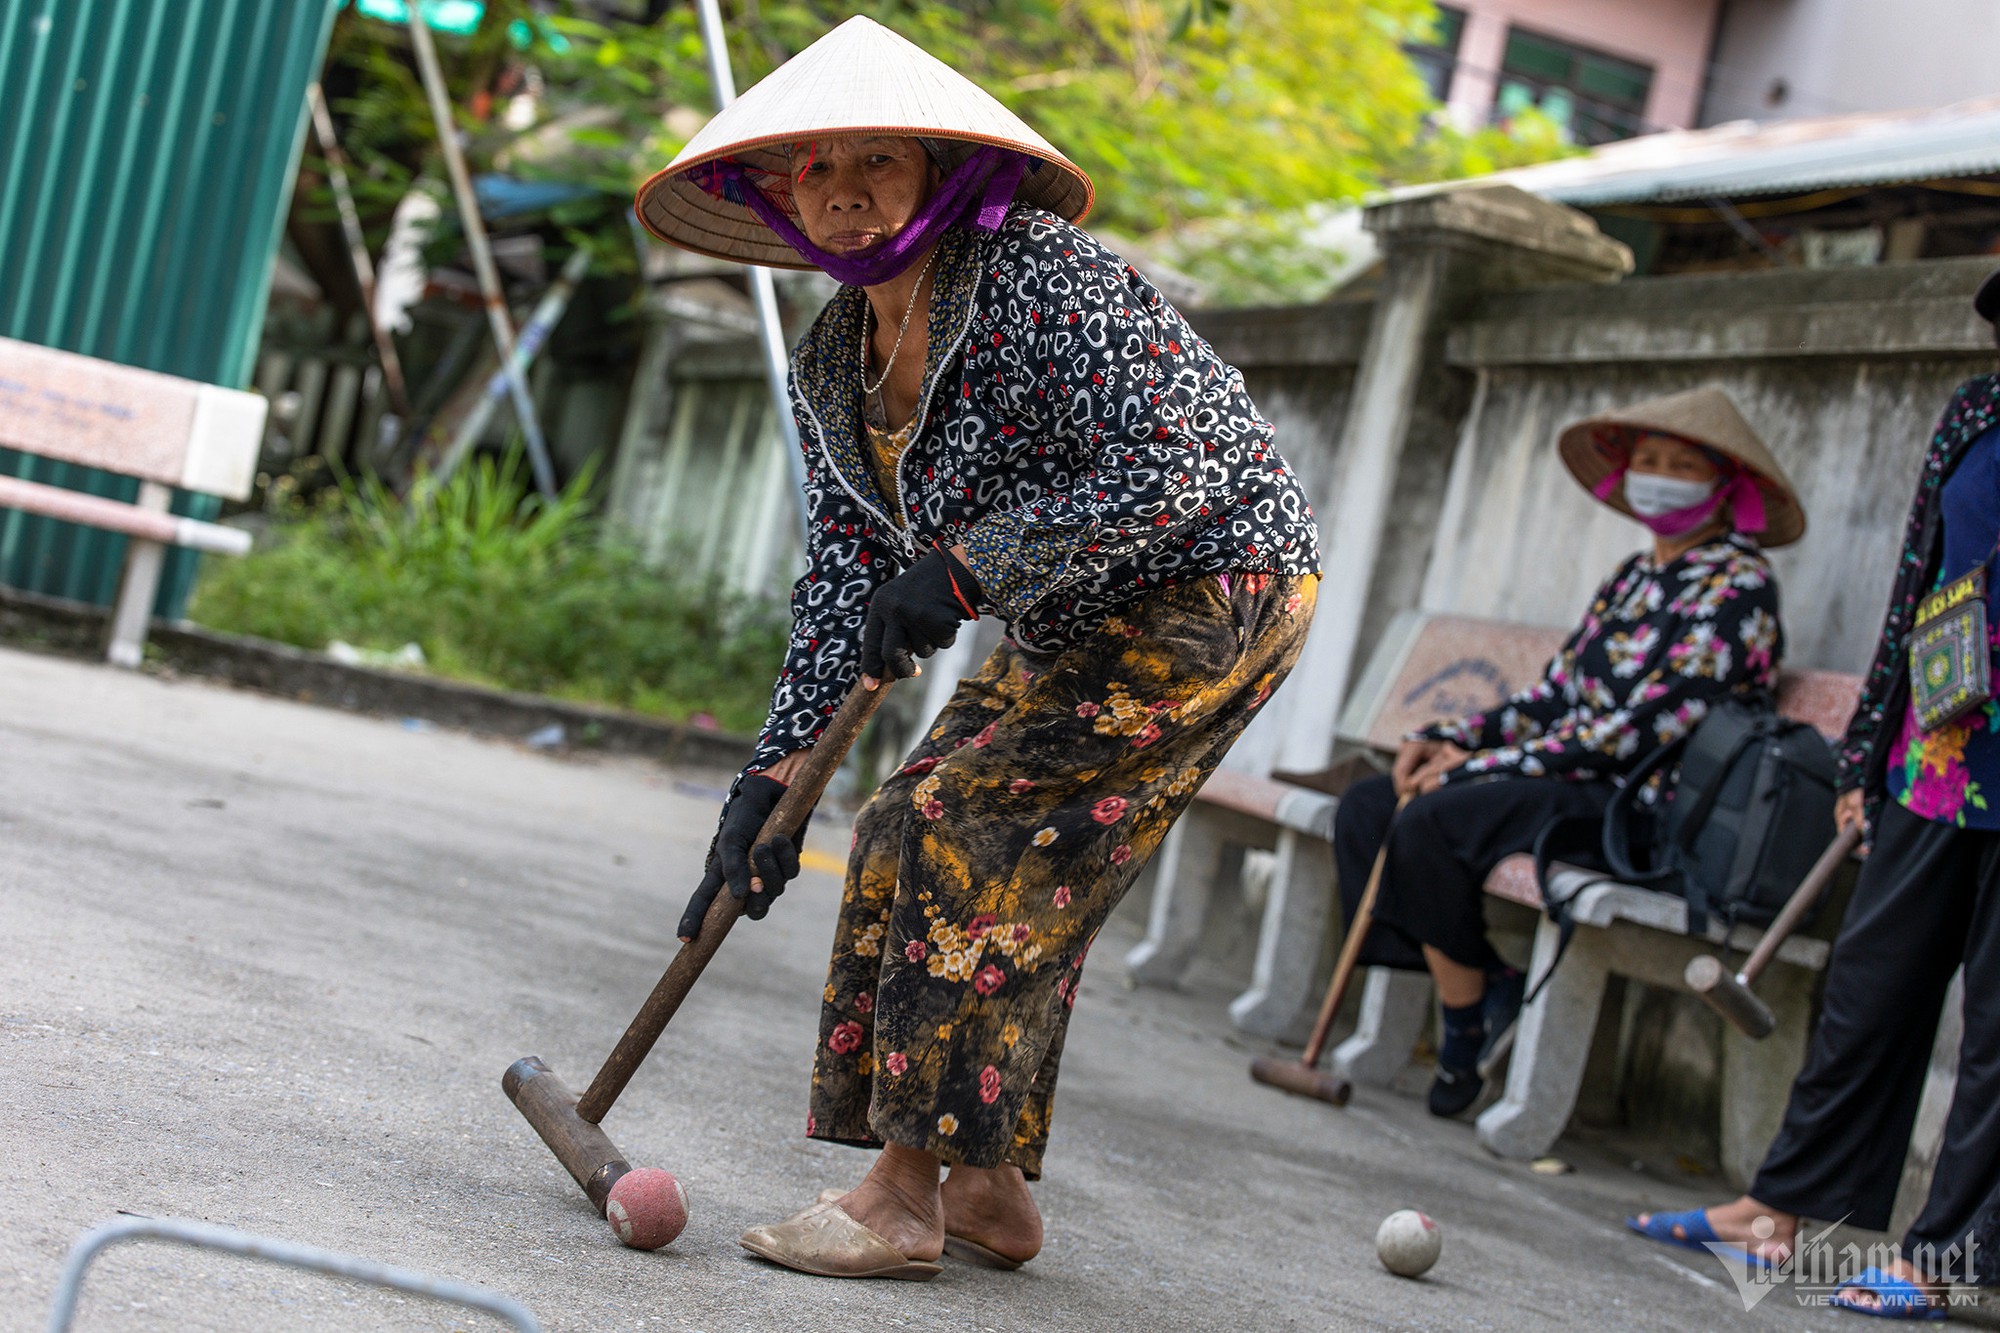 Phụ nữ làng đi dép nhựa, đội nón lá vung gậy chơi môn thể thao quý tộc châu Âu - Ảnh 8.